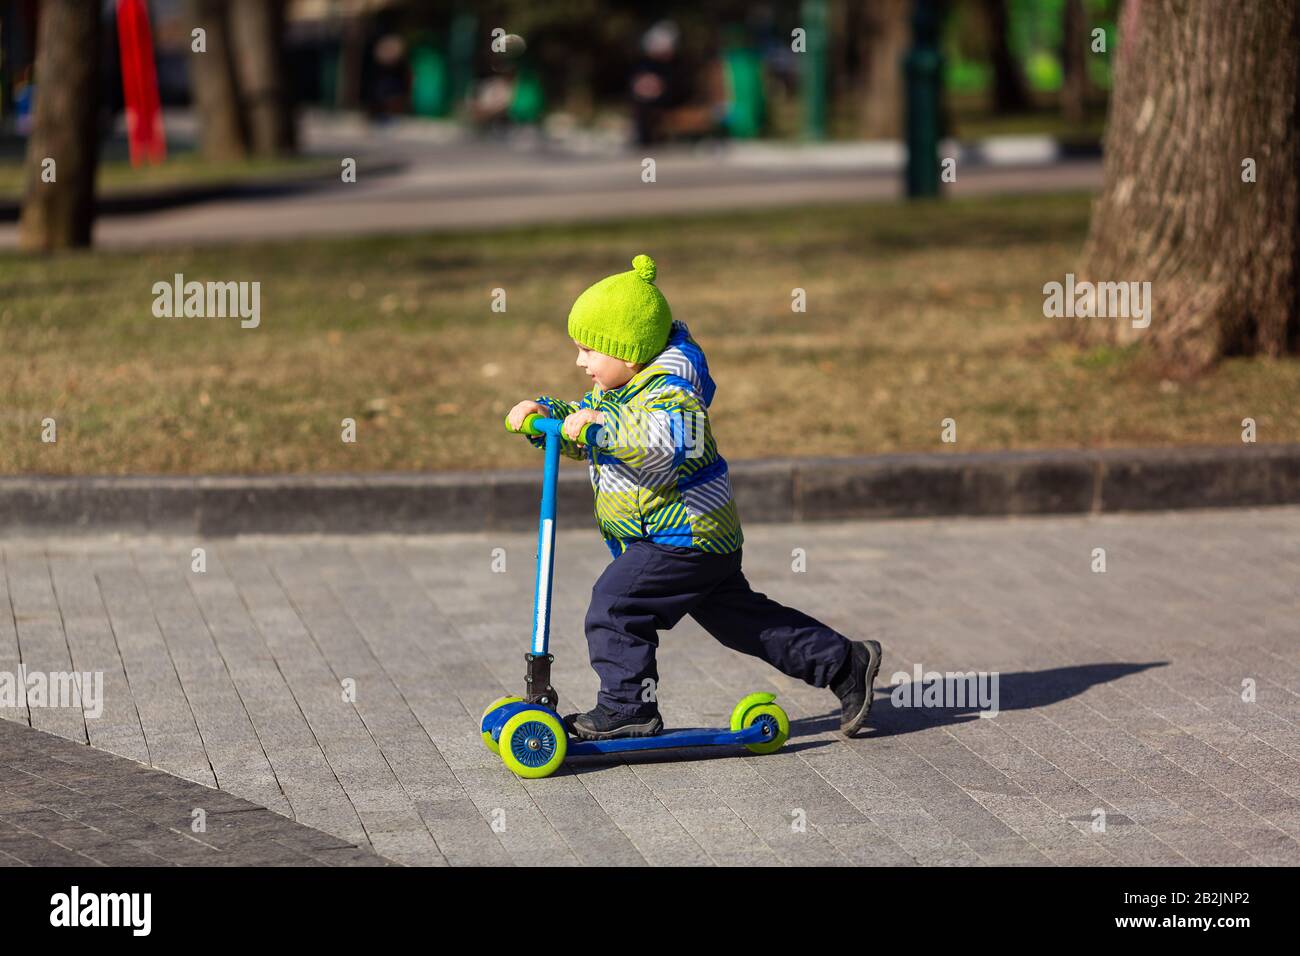 Joli petit garçon qui monte un scooter de coup. Activité extérieure saine Banque D'Images